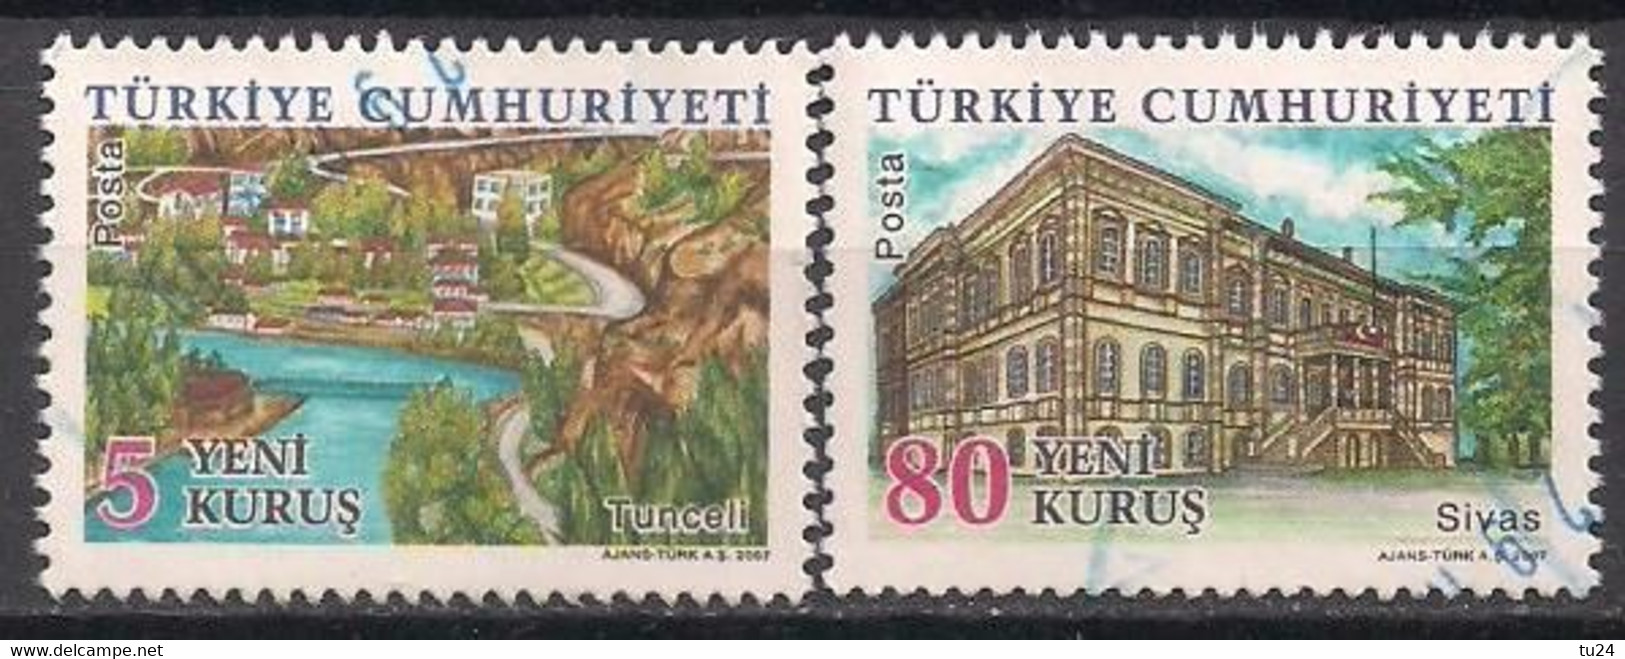 Türkei  (2007)  Mi.Nr.  3632 + 3636  Gest. / Used  (1cs11) - Used Stamps